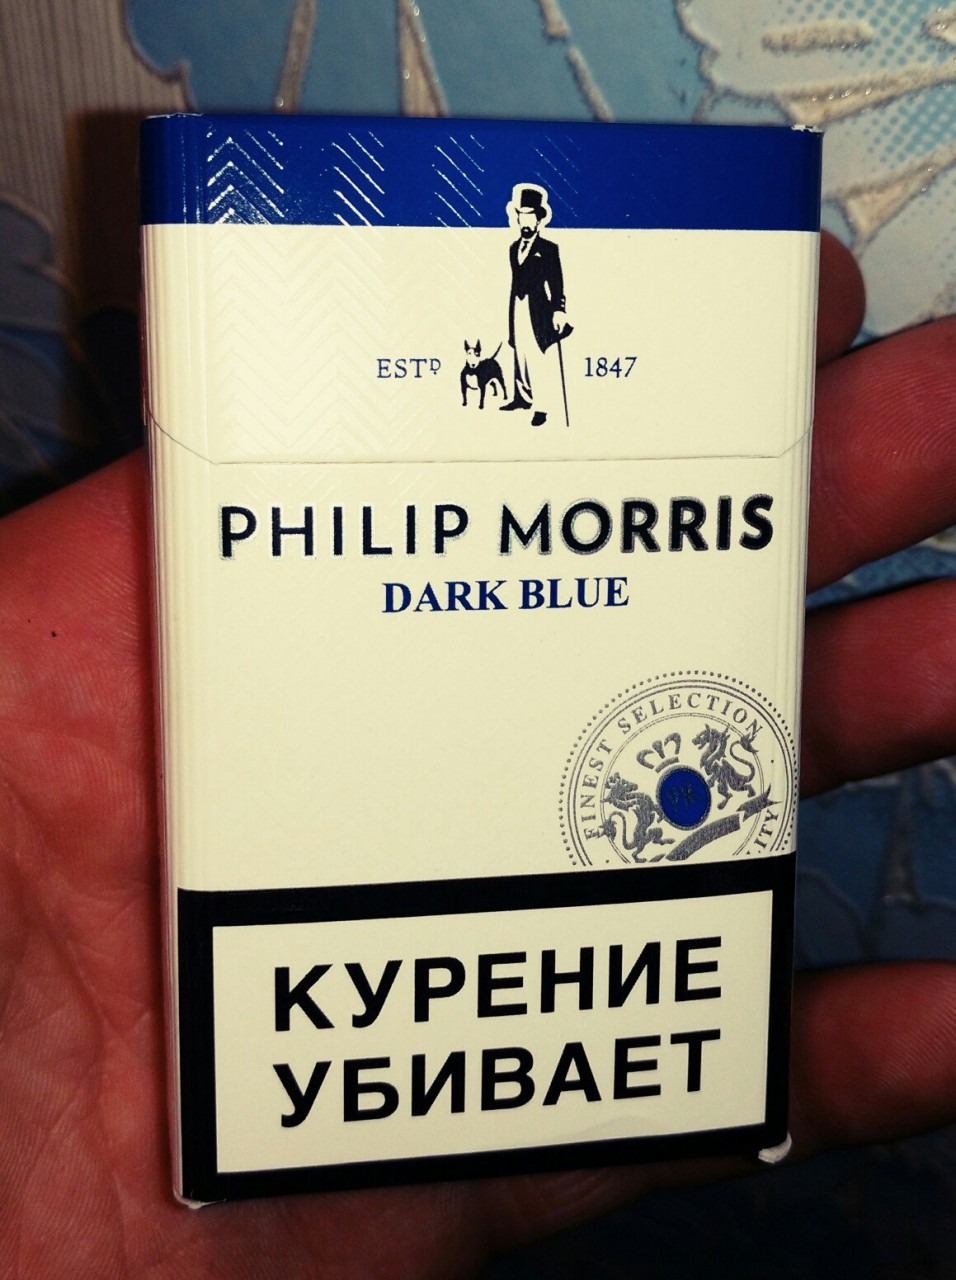 Филип морис кнопка цена. Сигареты Филип Моррис синий. Филип Морис синяя пачка. Сигареты Филип Моррис синяя пачка.